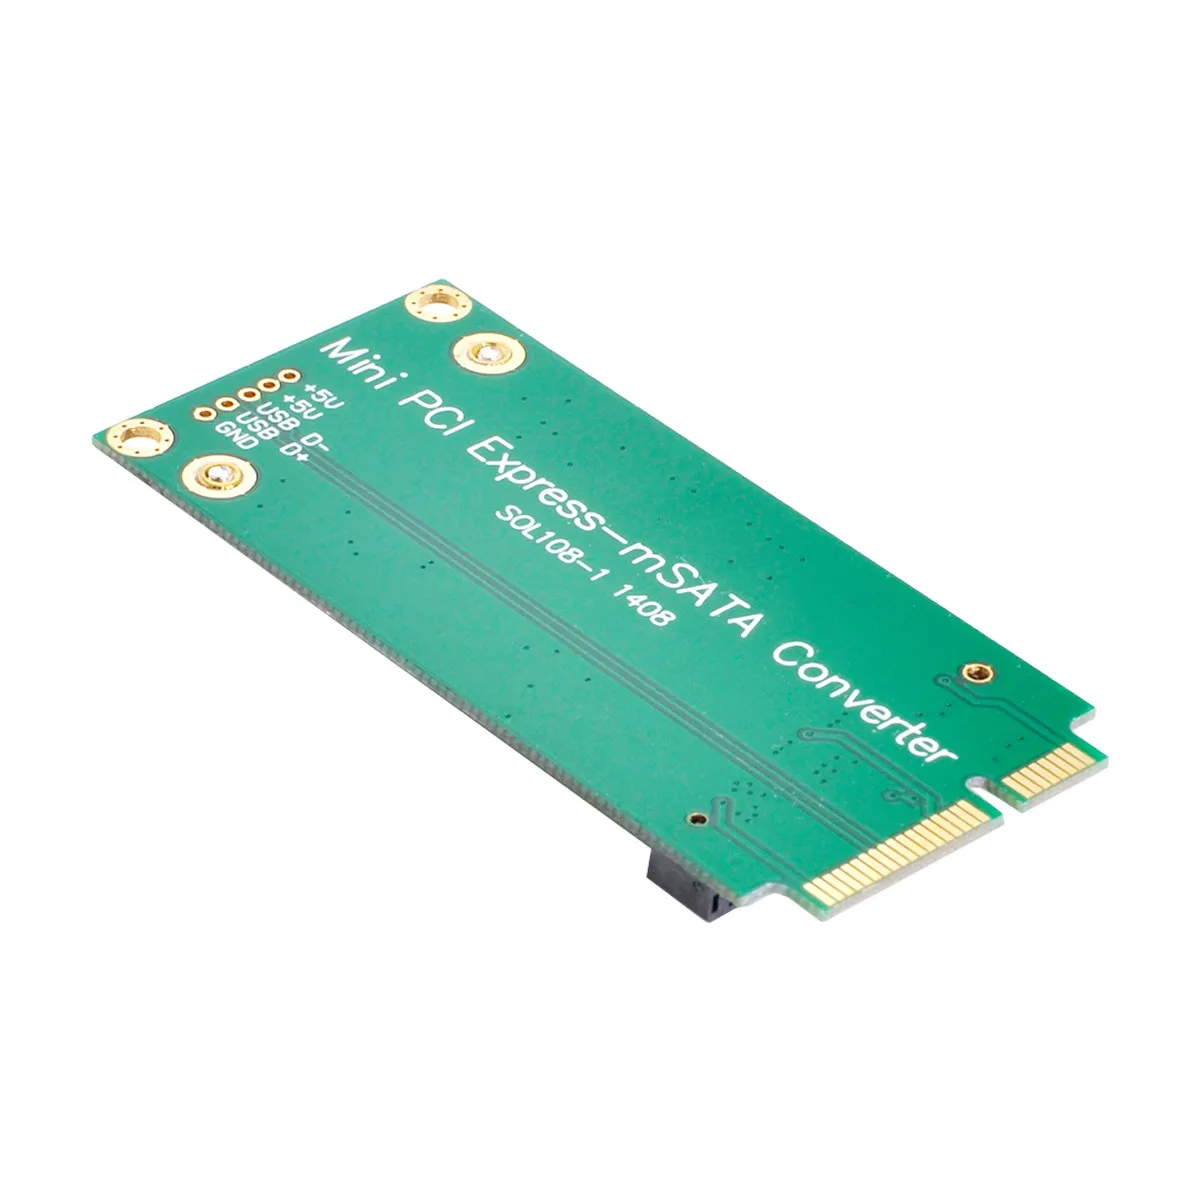 Chenyang 3x5cm mSATA Adapter zu 3x7cm Mini PCI-e SATA SSD für Asus Eee PC 1000 S101 900 901 900A T91